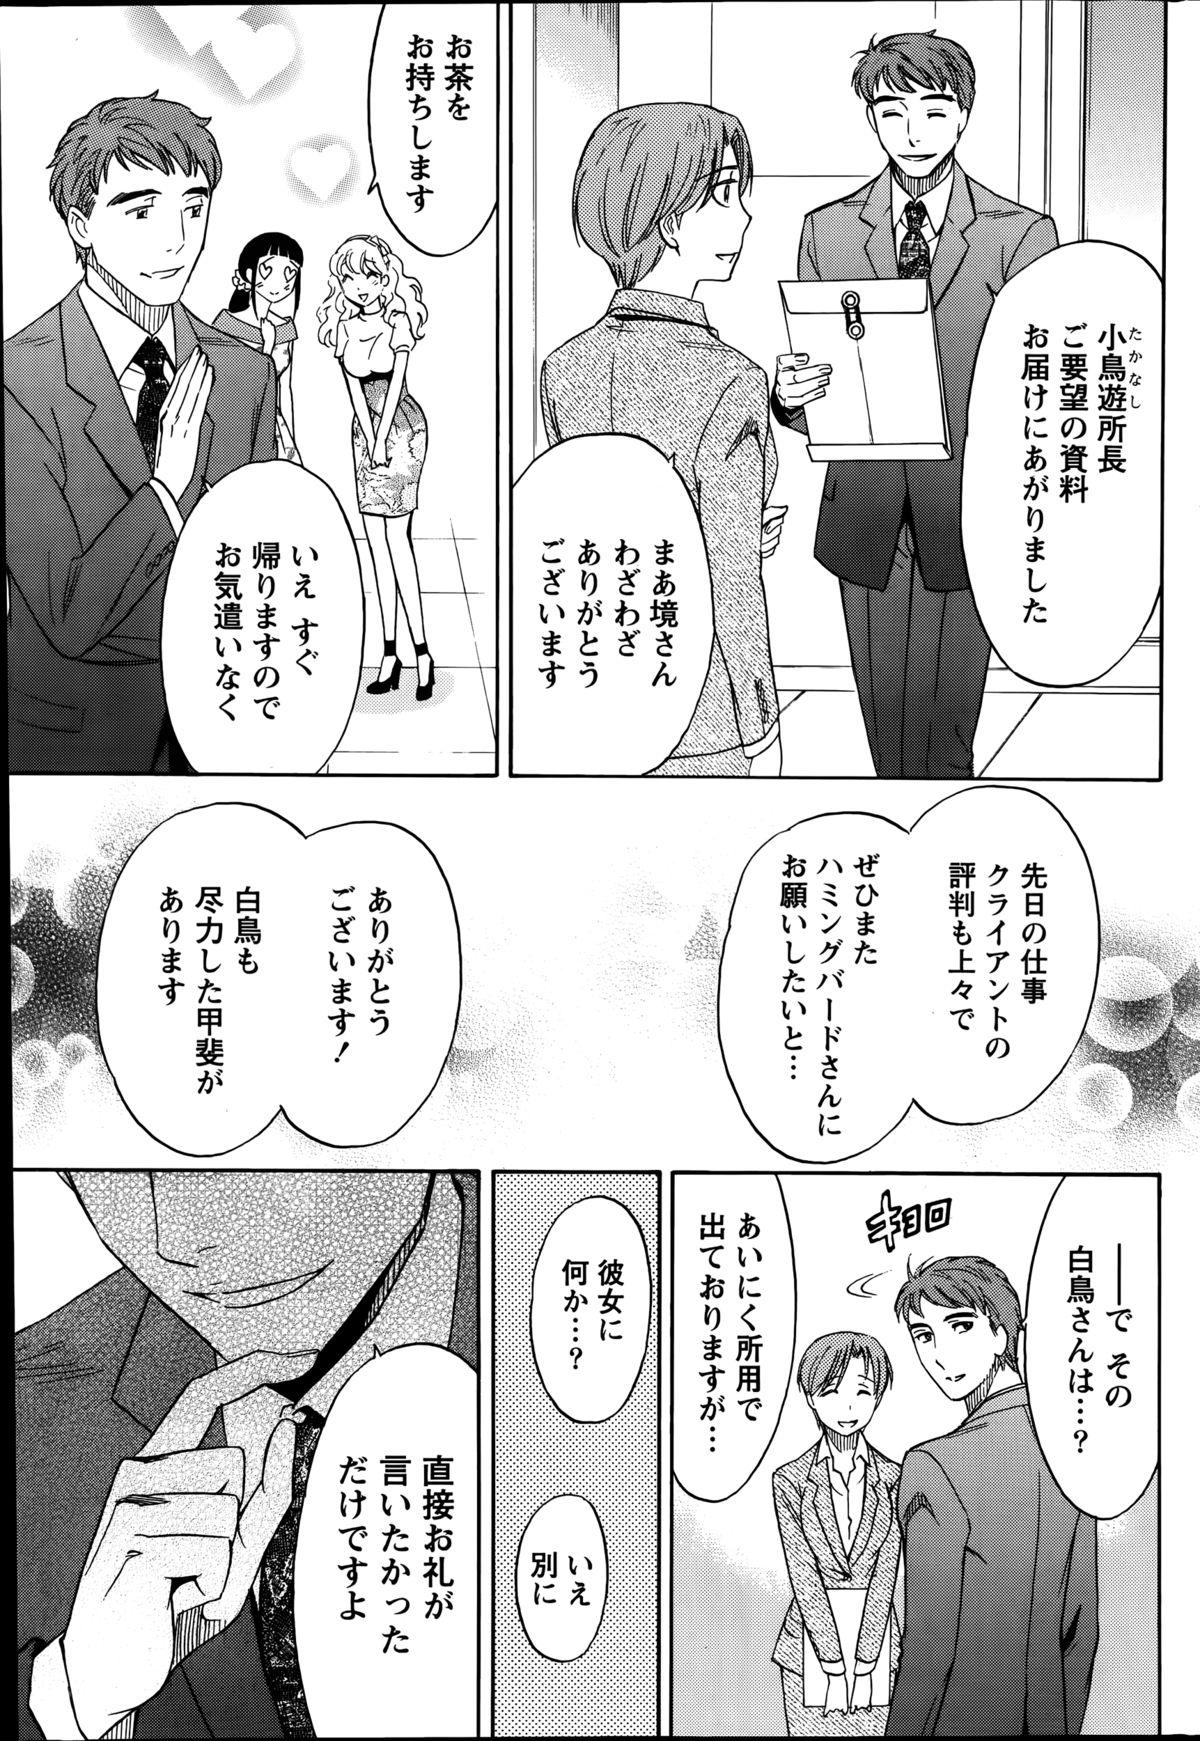 [Sawada Furope] Nise kon! - Spectacular Happy Sham Marriage! Ch.1-6 61